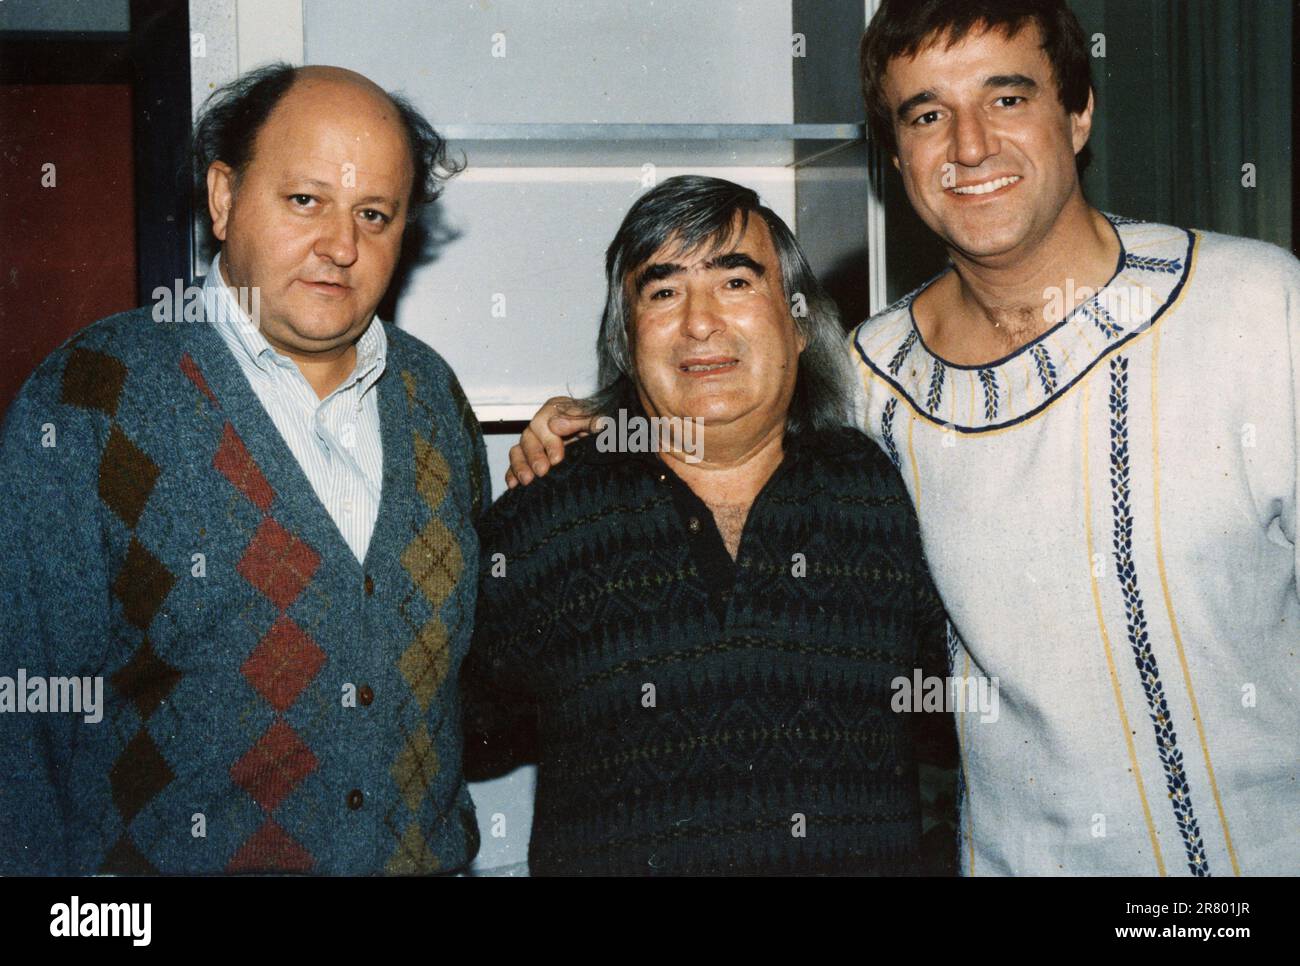 Italian actors Massimo Boldi (left) and Christian De Sica (right), 1980s Stock Photo